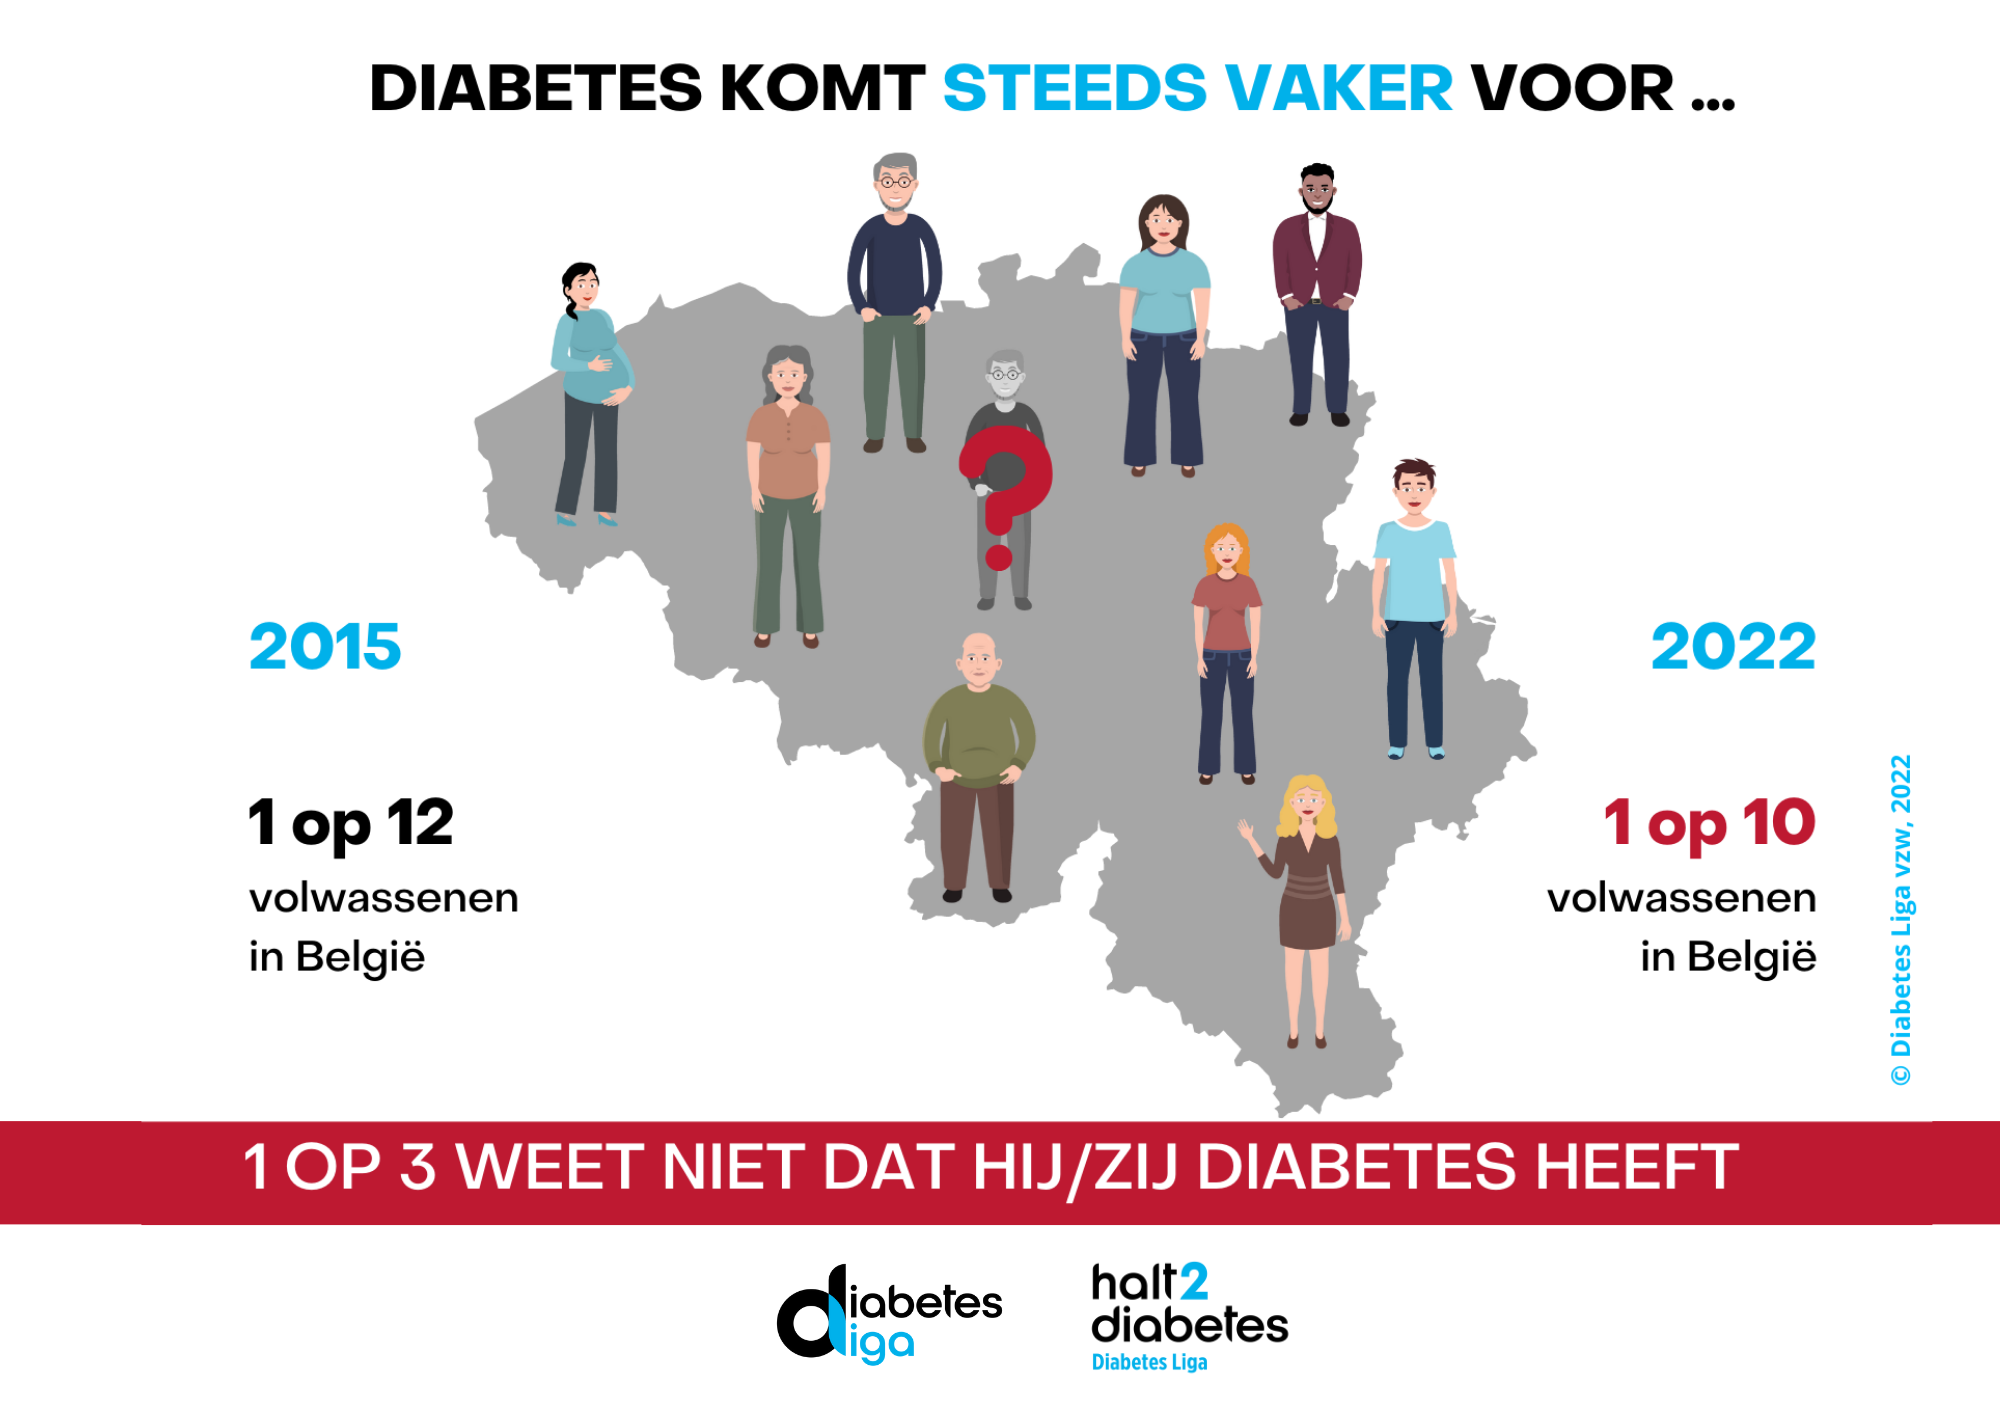 1 op 10 halt2diabetes kaart